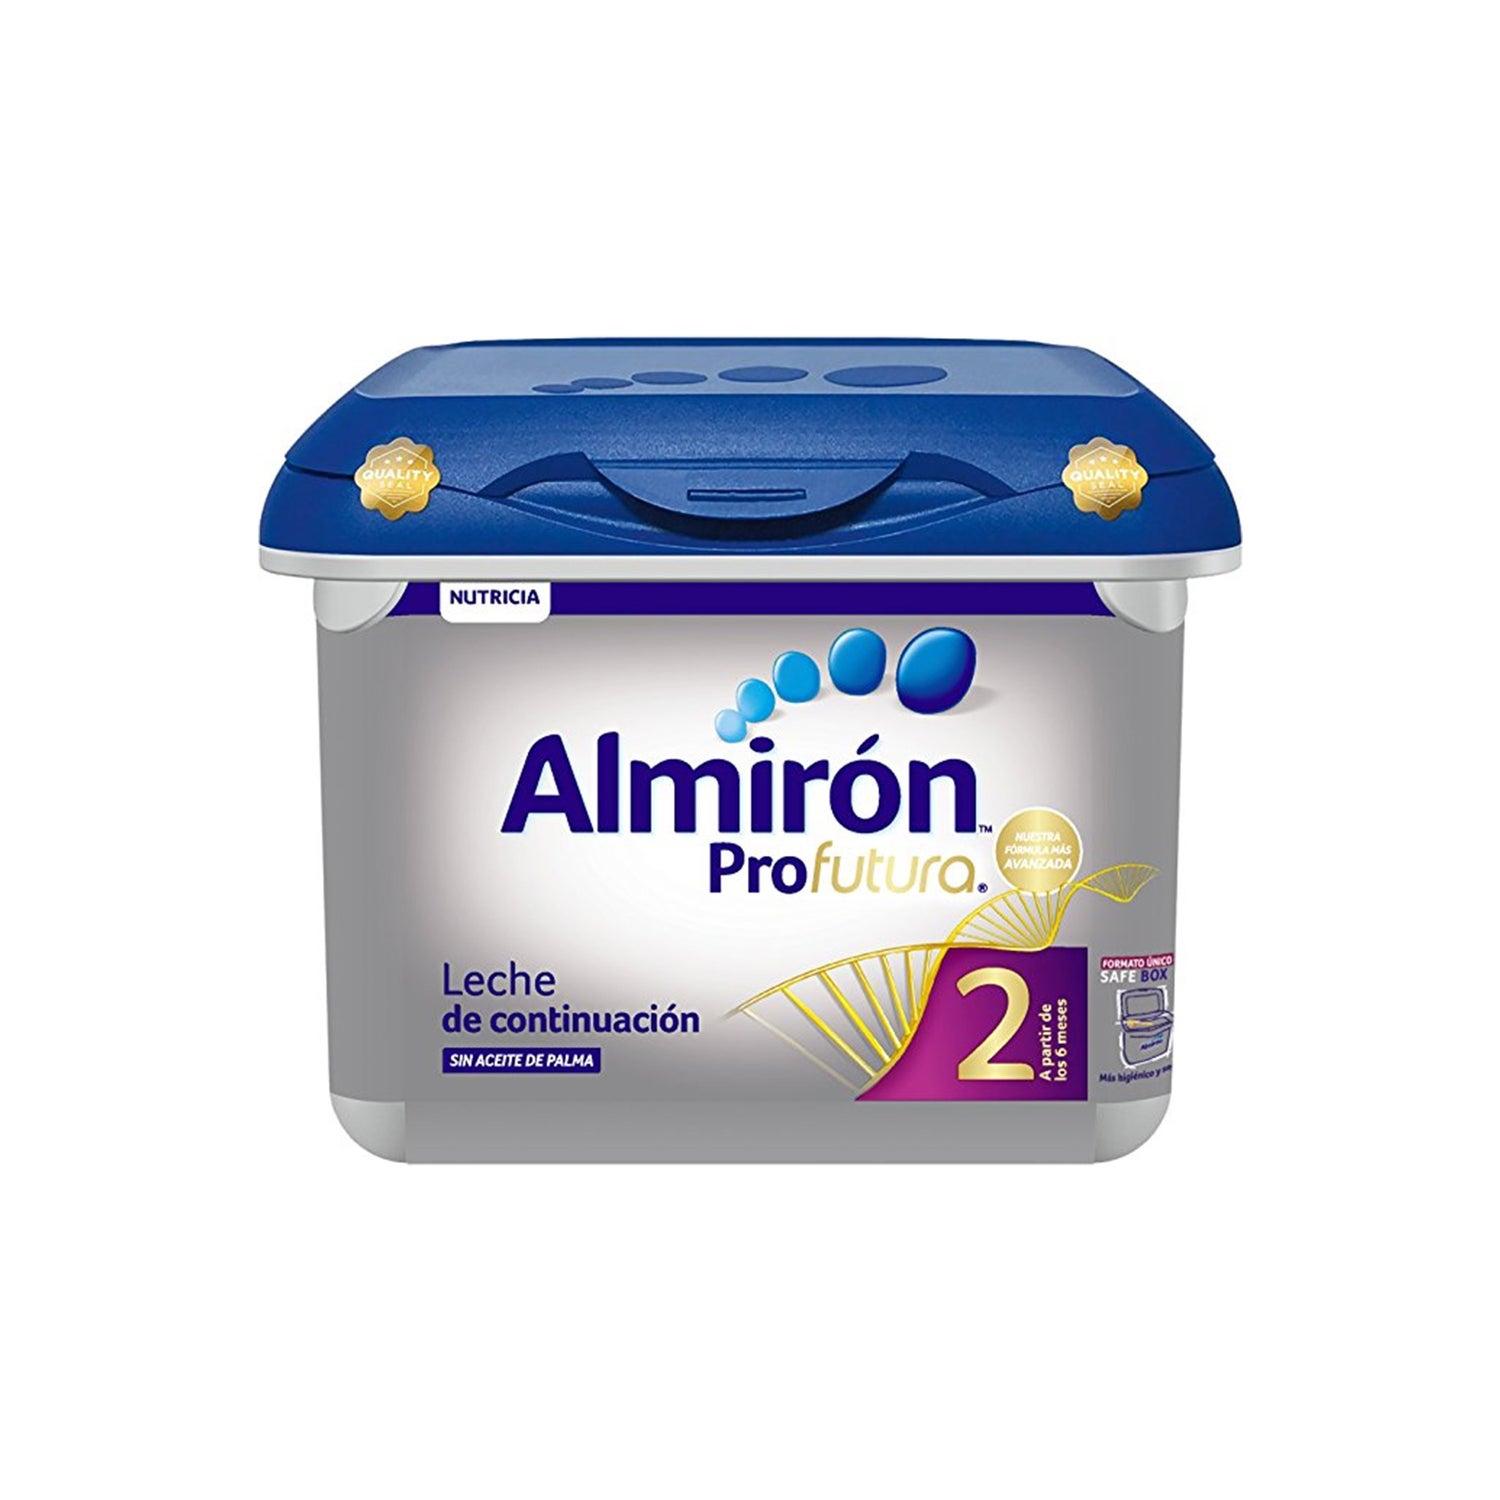 Almiron, Almirón Profutura 2 es una Leche de Continuación para Lactantes  SIN Aceite de Palma indicada a partir de los 6 meses de edad, su nueva  fórmula muy